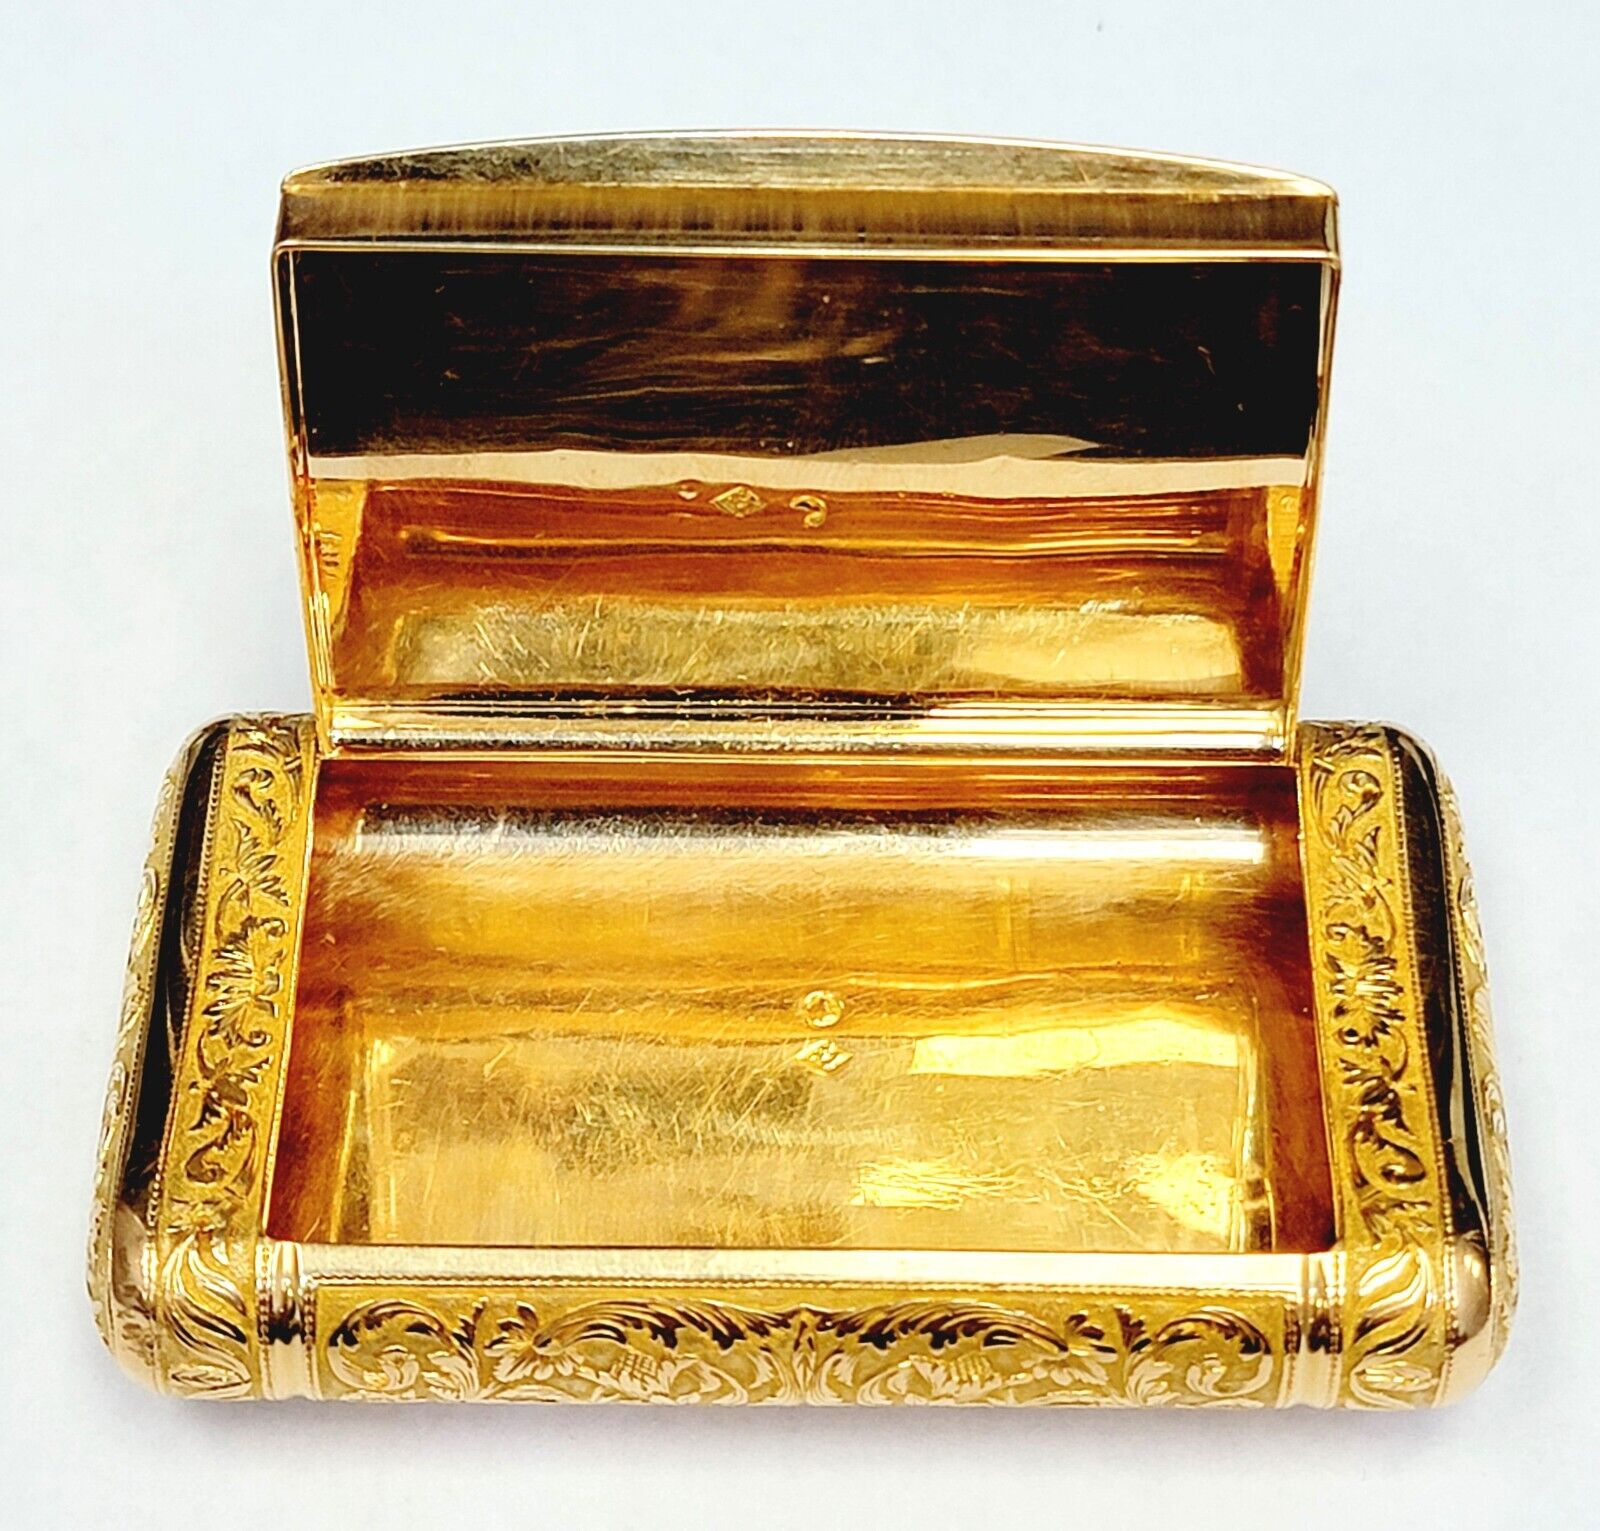 Antique 18k yellow gold snuff box by Adrien-Maximilien Vachette, Paris,1819-1838